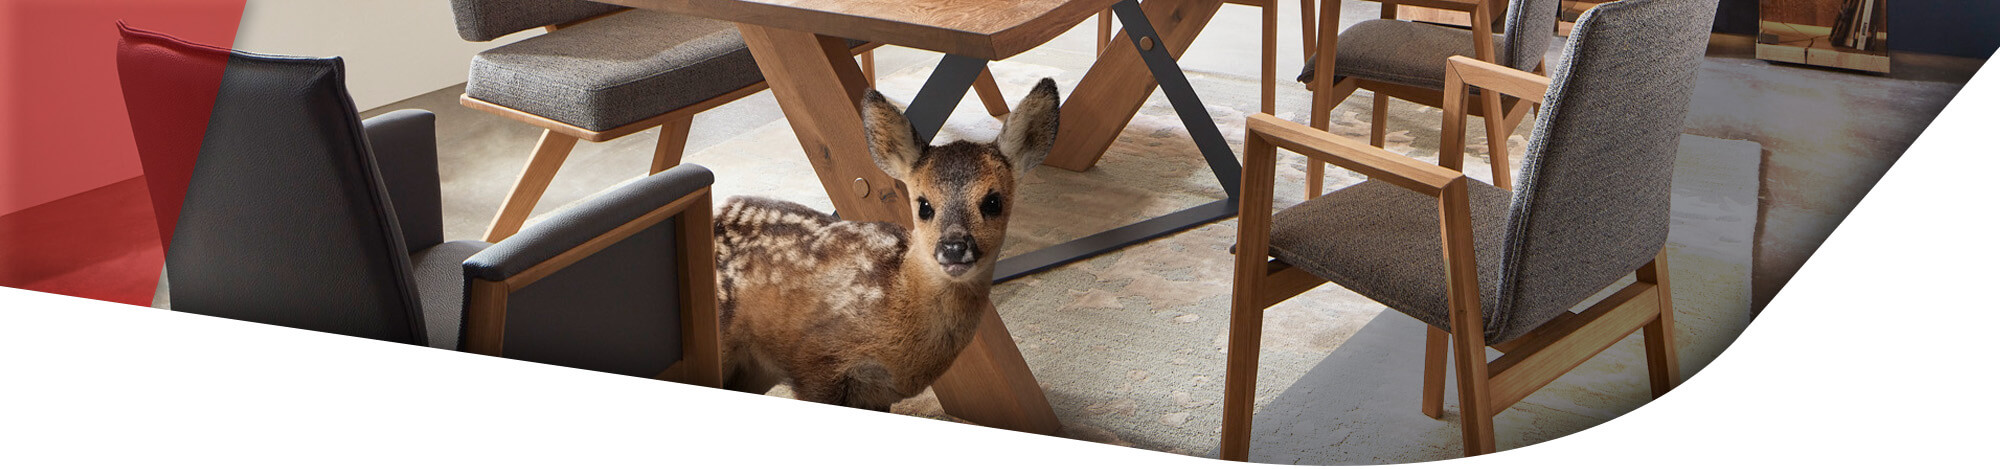 Rehkitz unter einem Massivholz Esstisch mit STühlen in hellgrauem Polster